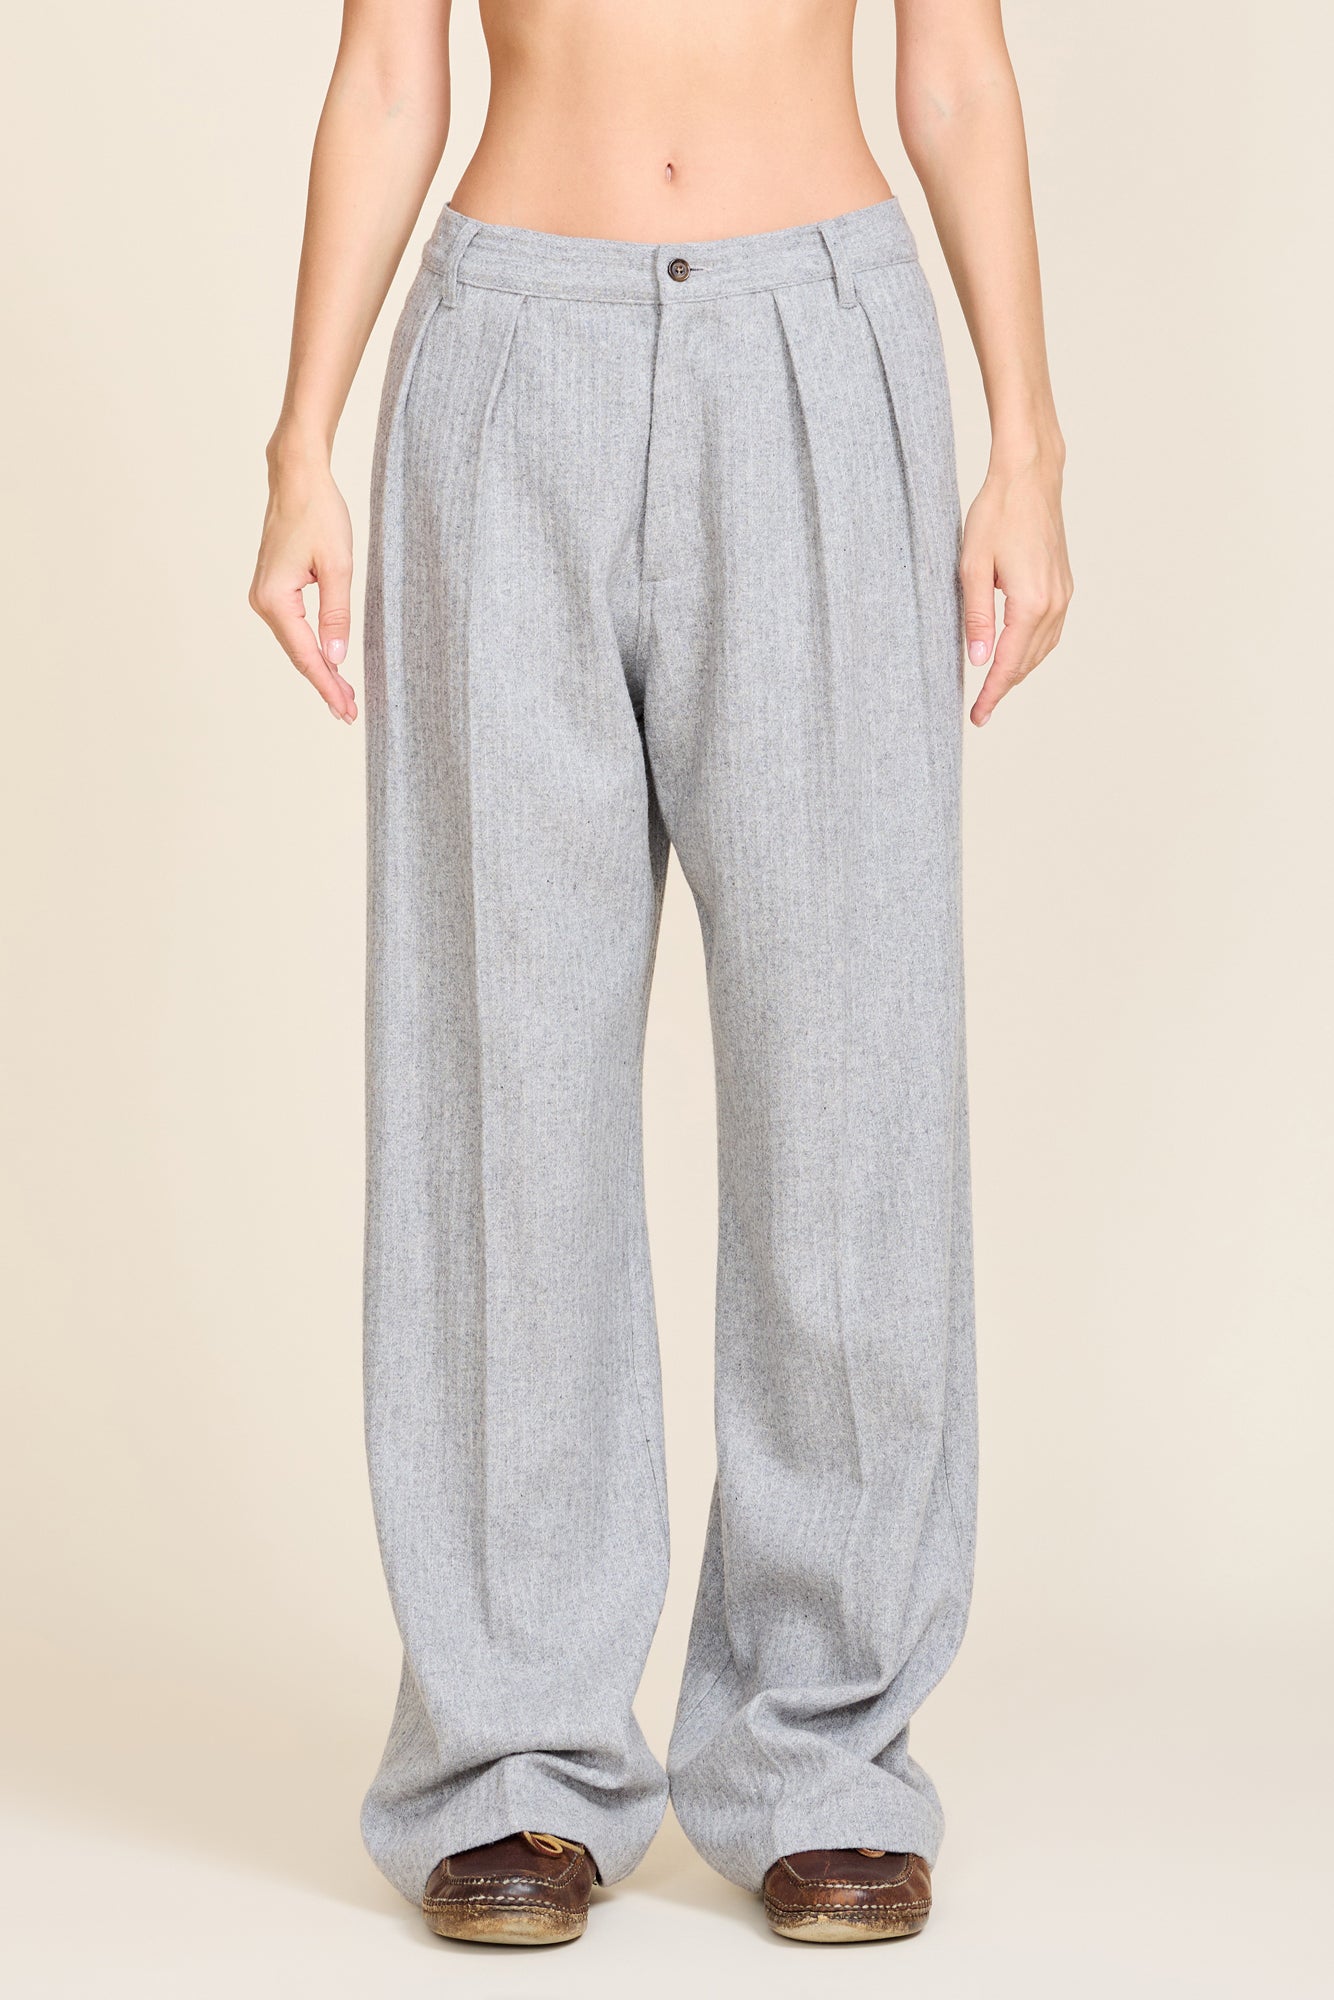 ASOS DESIGN high waist slim peg trouser in grey linen | ASOS